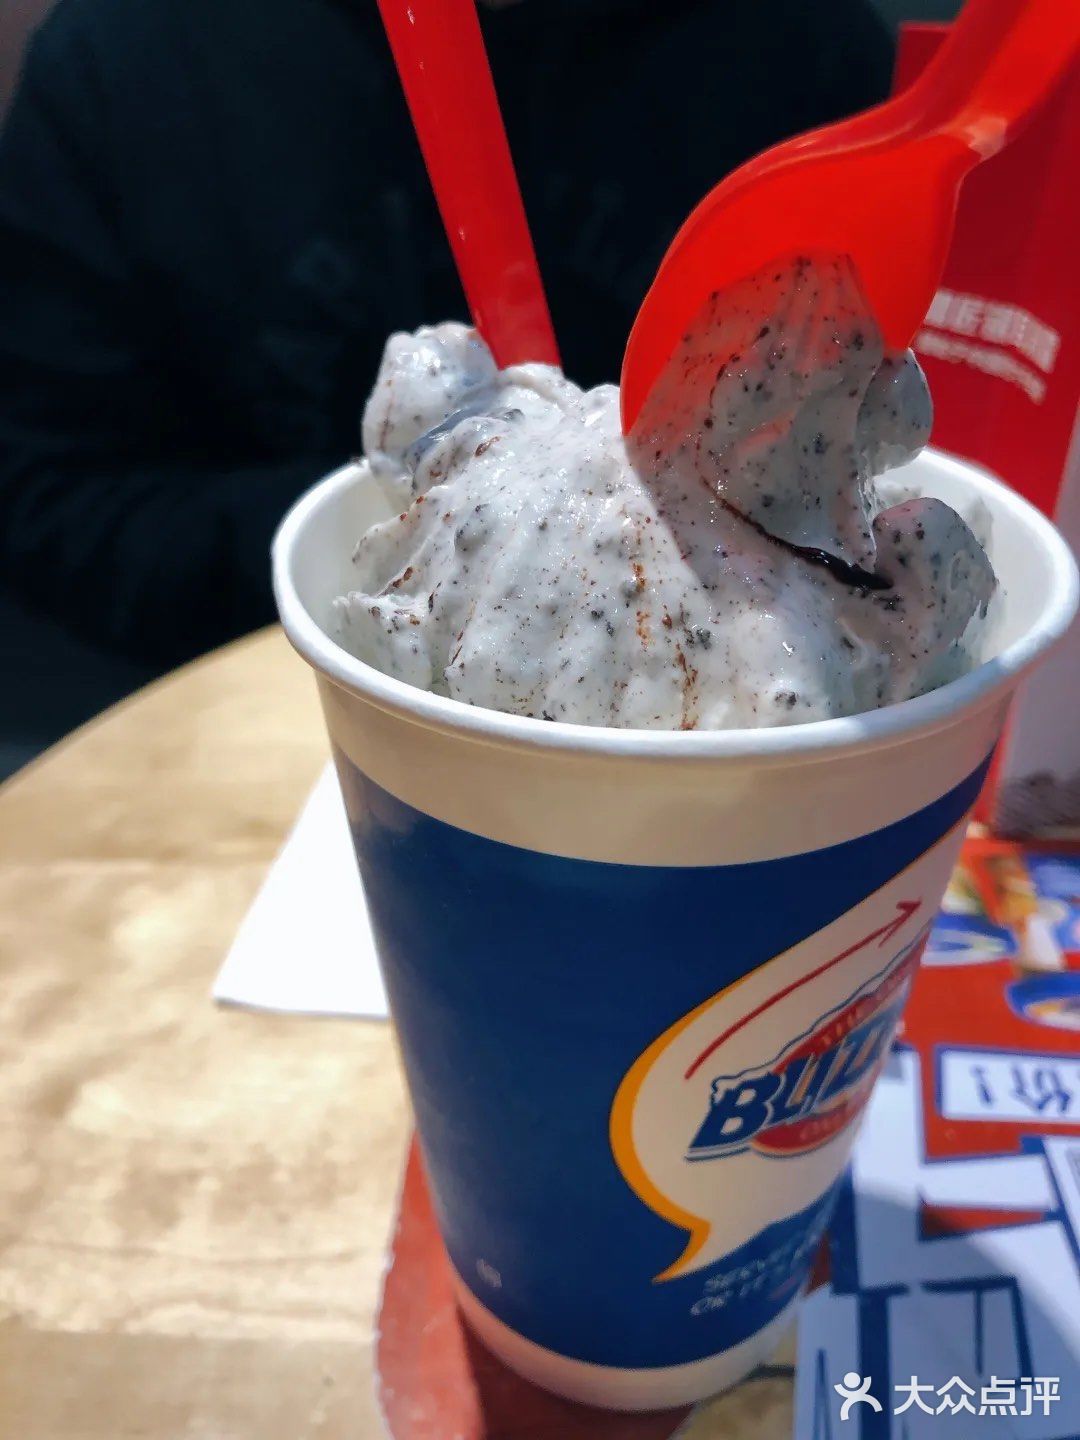 很久之前被种草的暴风雪,dq比利时巧克力味冰淇淋,这次终于没有错过